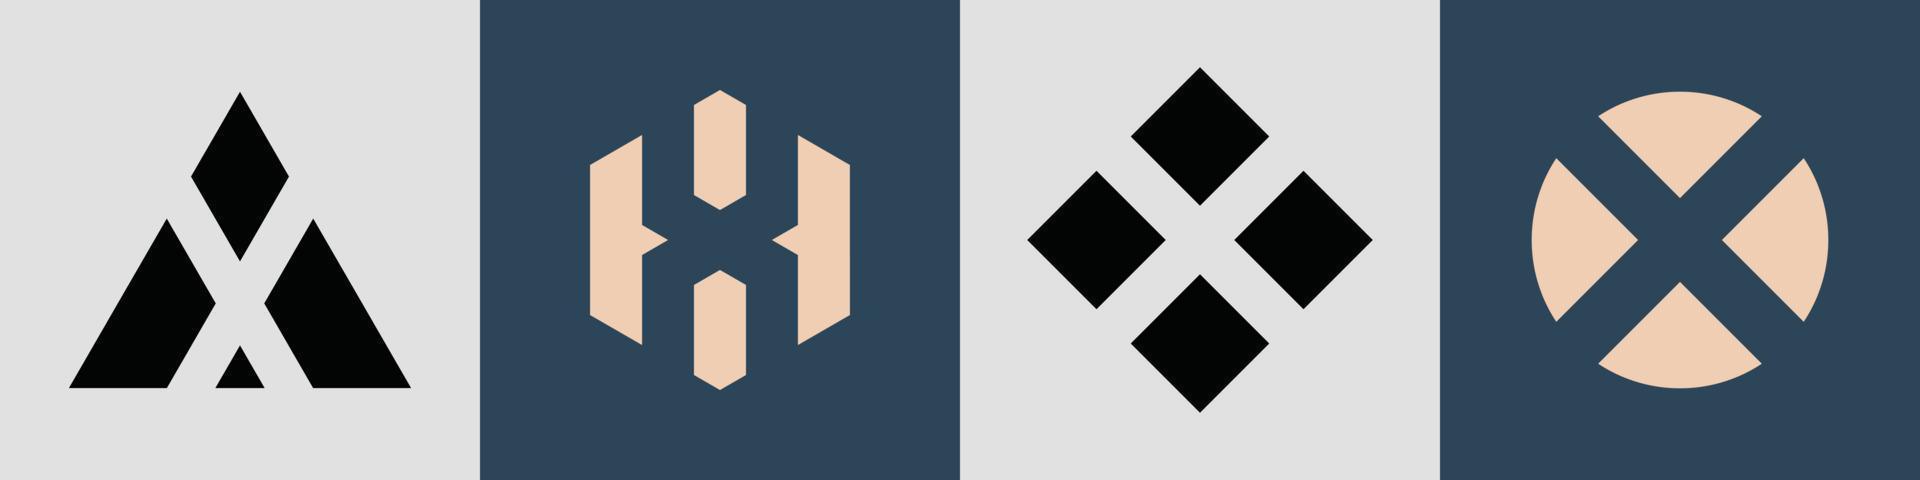 creatieve eenvoudige beginletters x logo-ontwerpbundel. vector